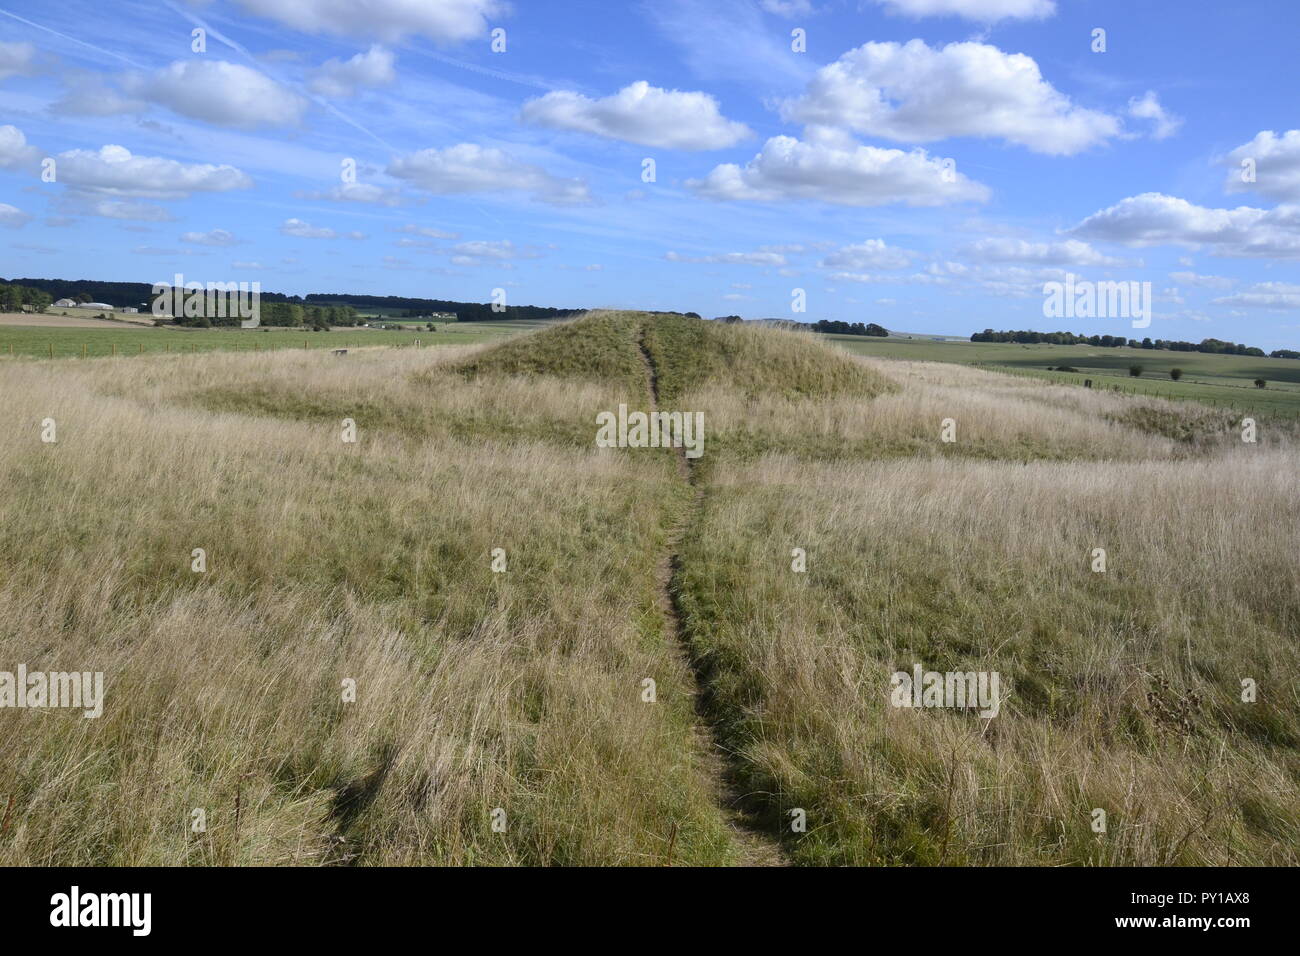 Cursus des castrats. Anciens tumulus funéraires ou à Stonehenge barrows cursus sur le paysage de Stonehenge, Wiltshire, England, UK Banque D'Images